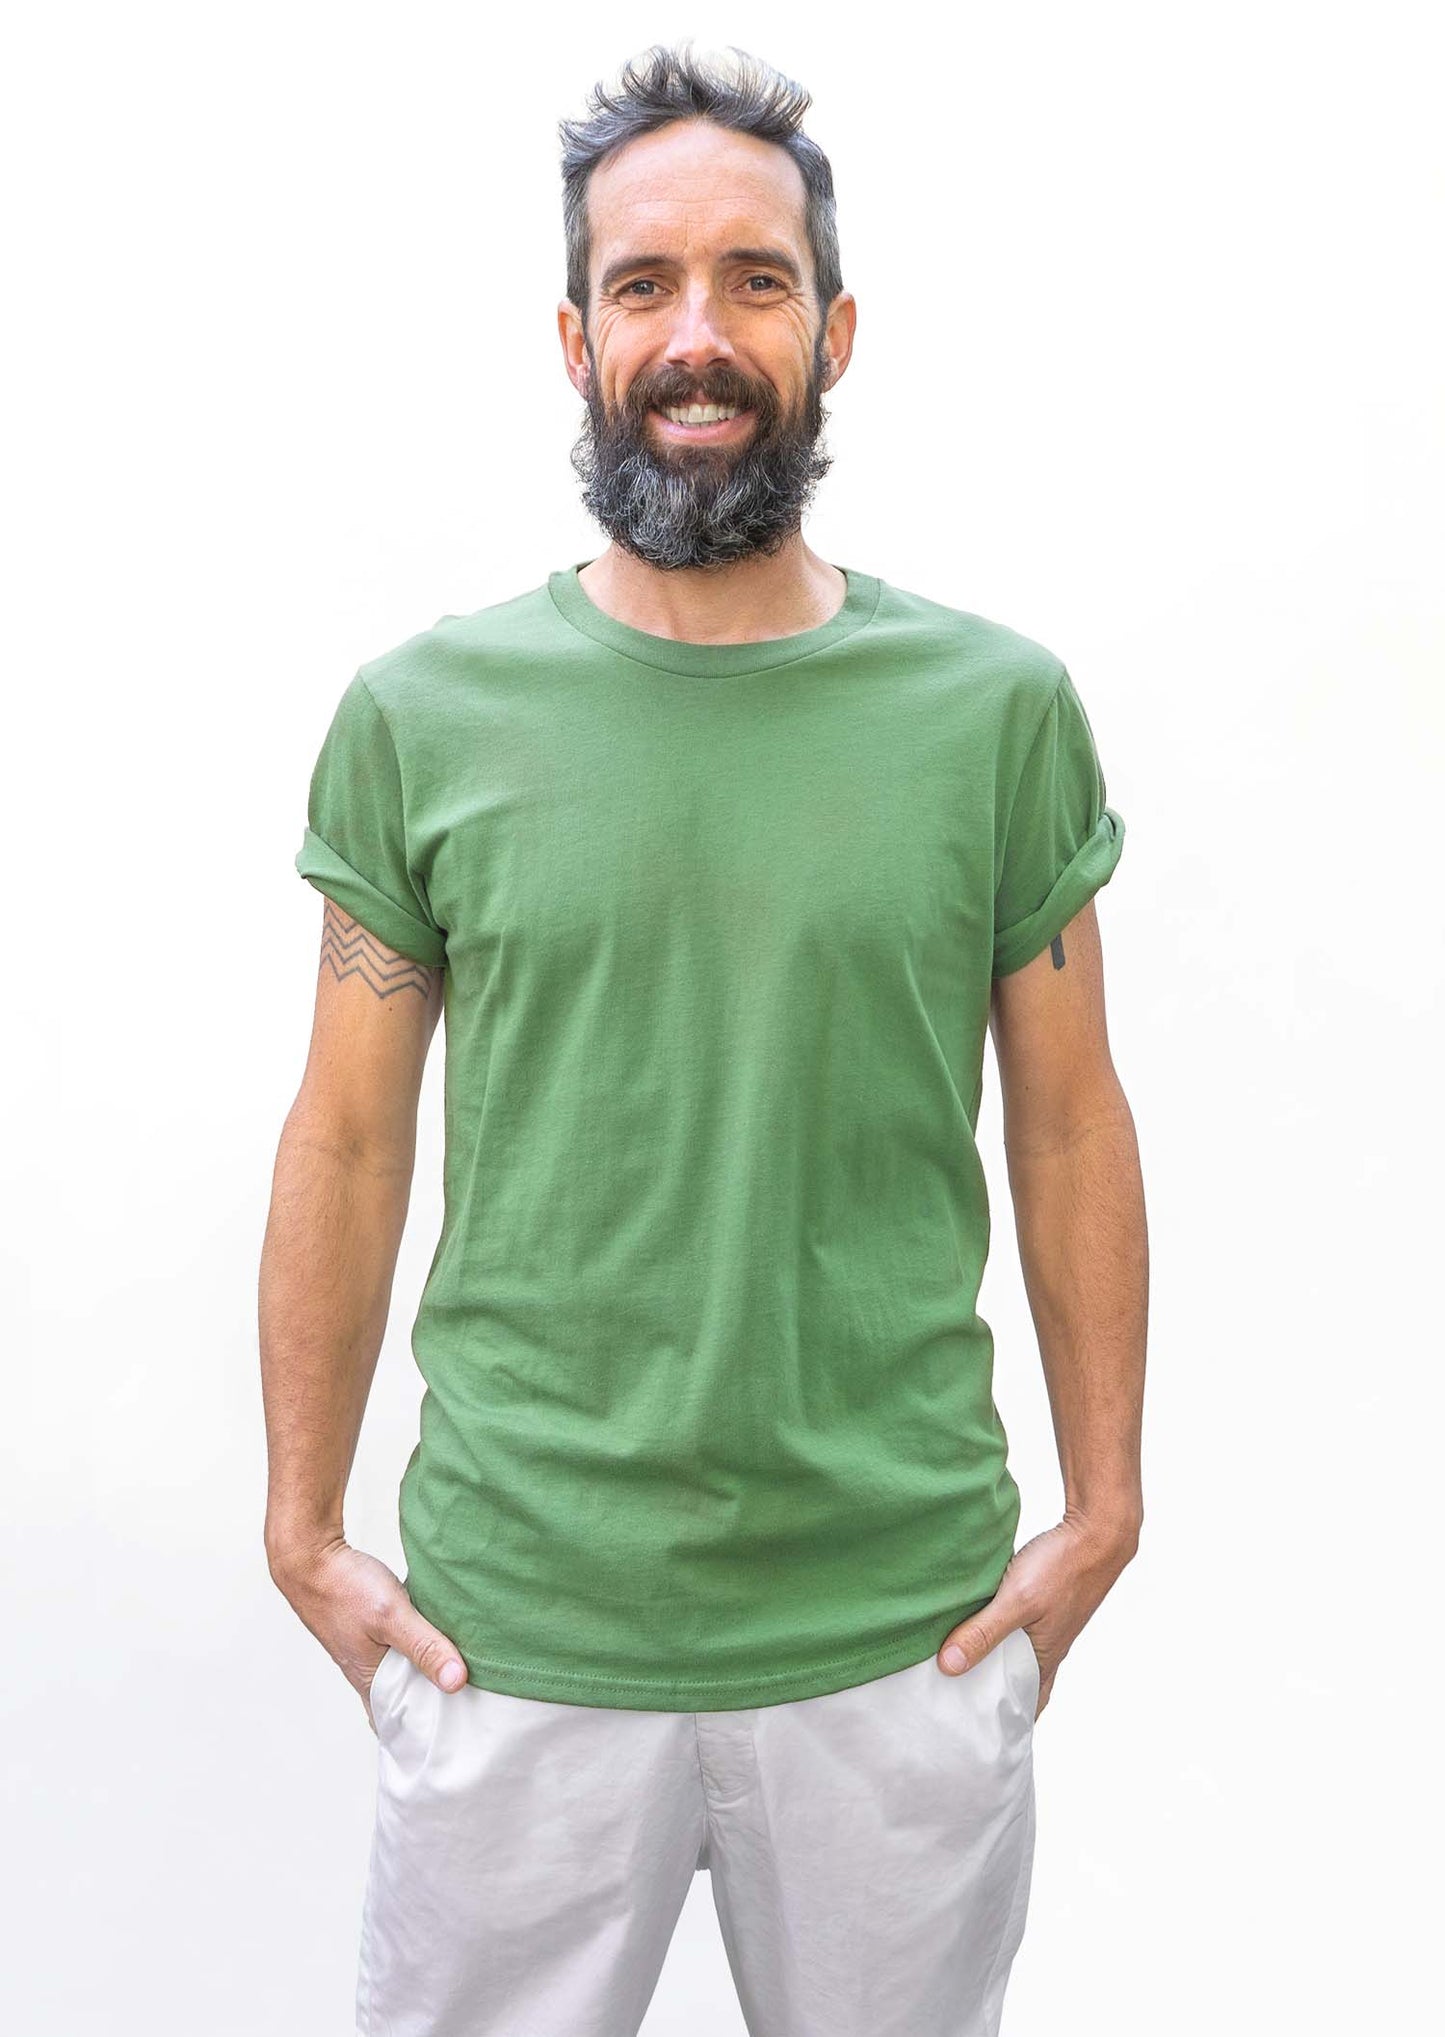 2 t-shirts vert lichen - lilas